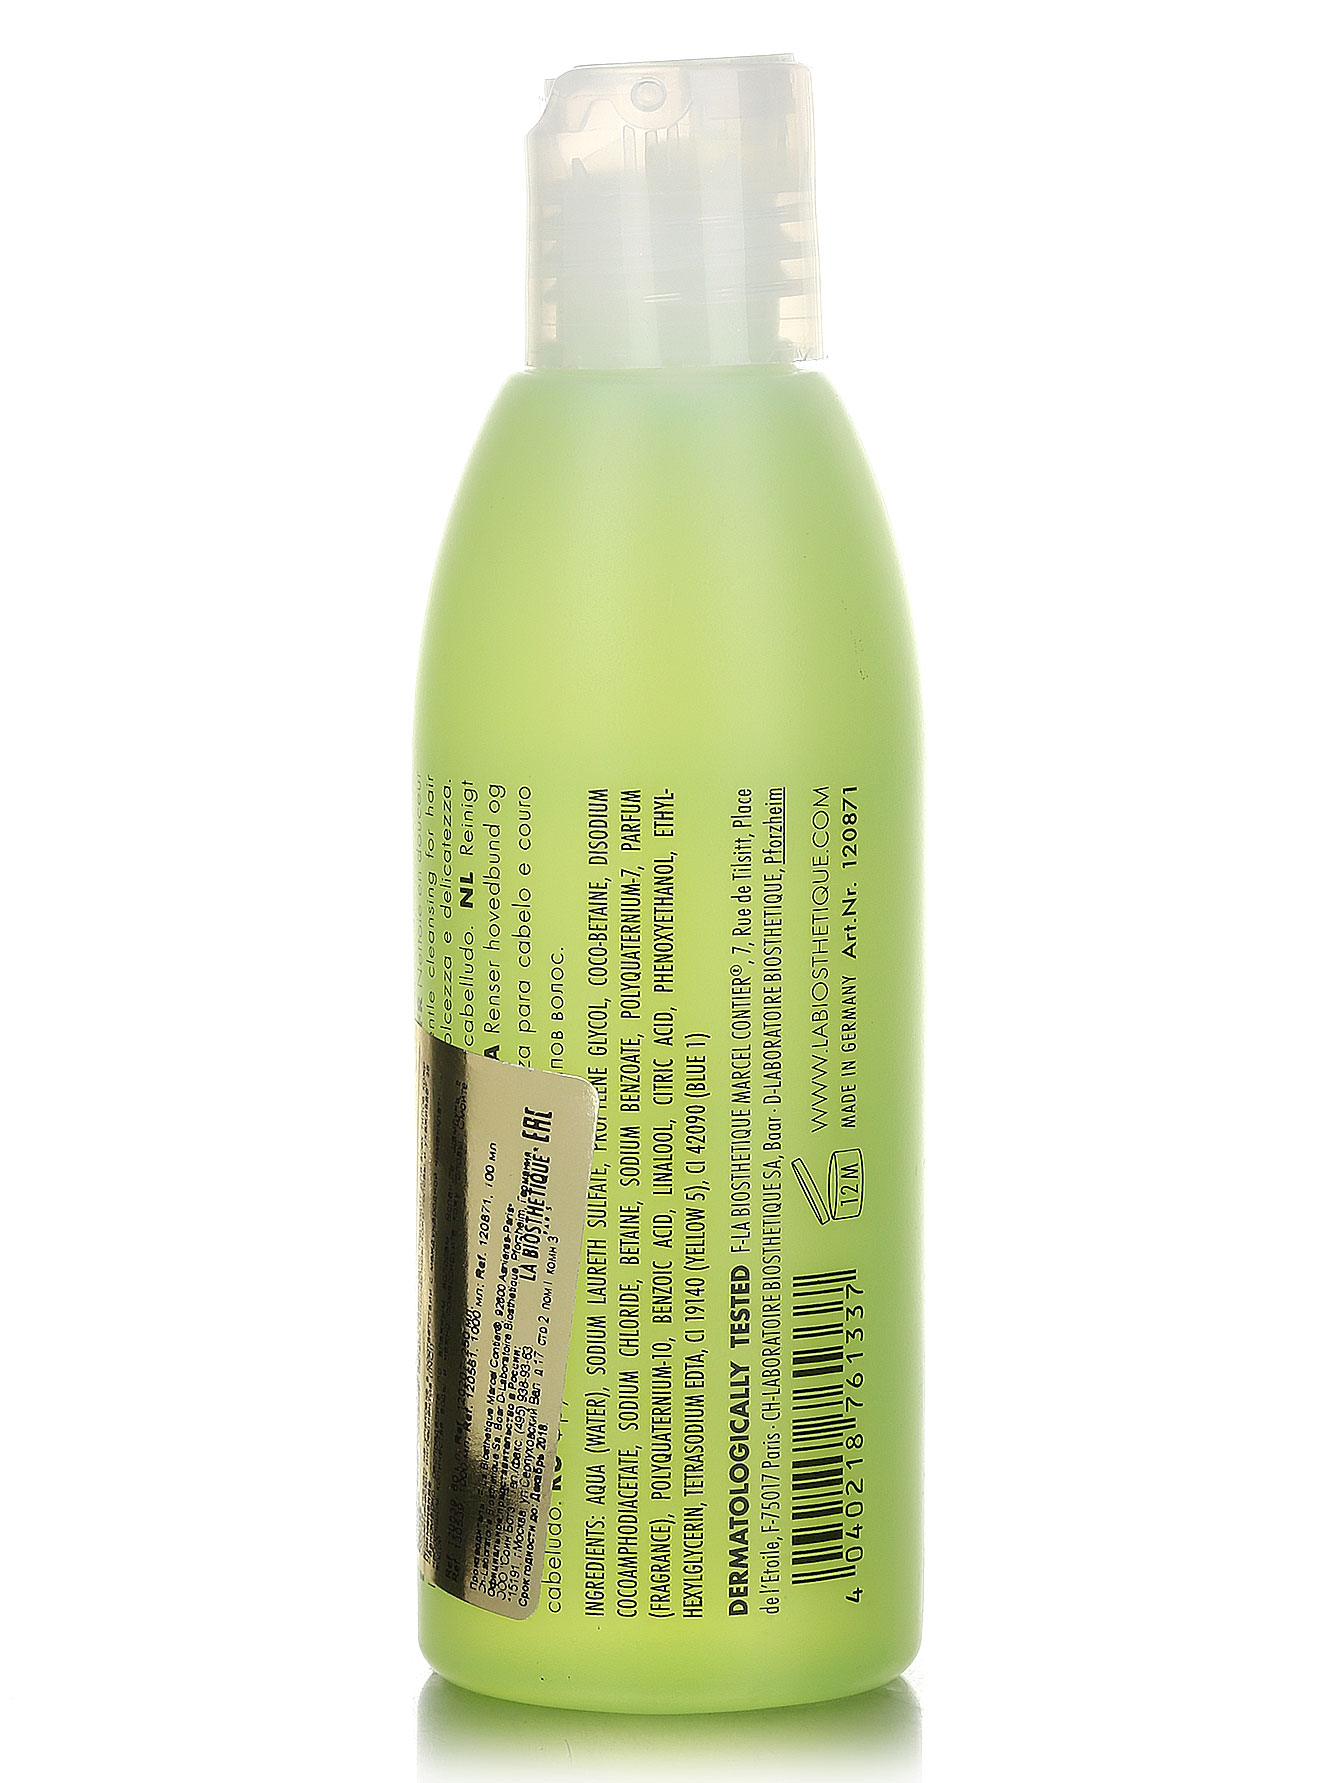  Шампунь фруктовый для волос всех типов - Hair Care, 100ml - Модель Верх-Низ